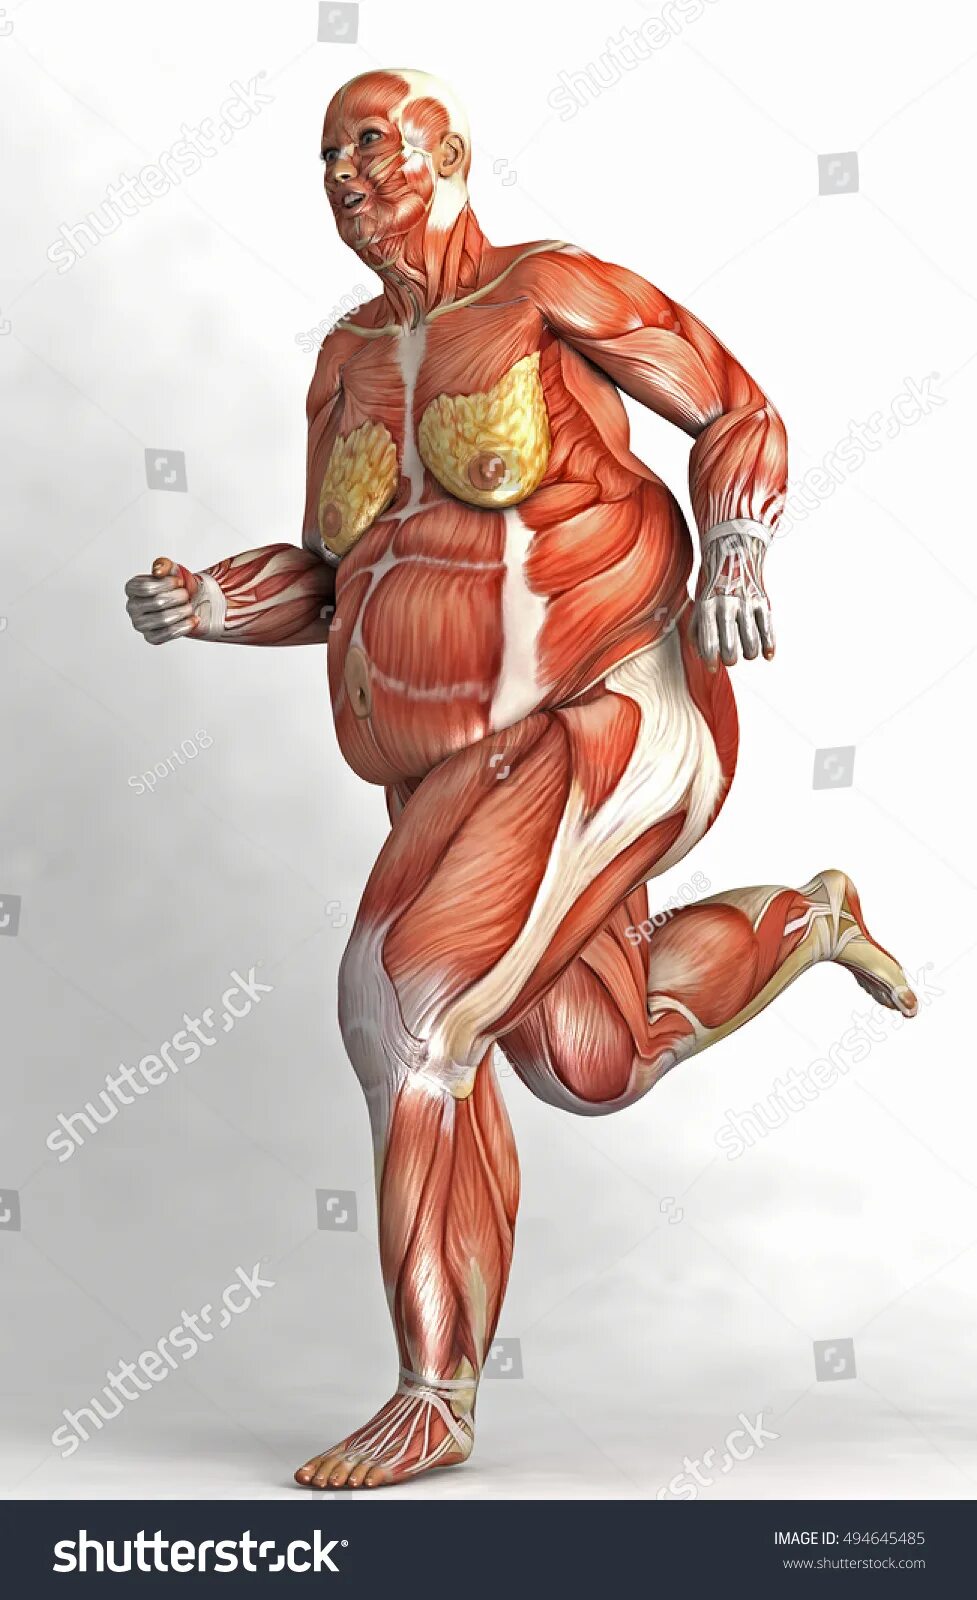 Мышцы человека. Скелет человека с мышцами. Тело человека без кожи и мышц. Мышцы женского тела.